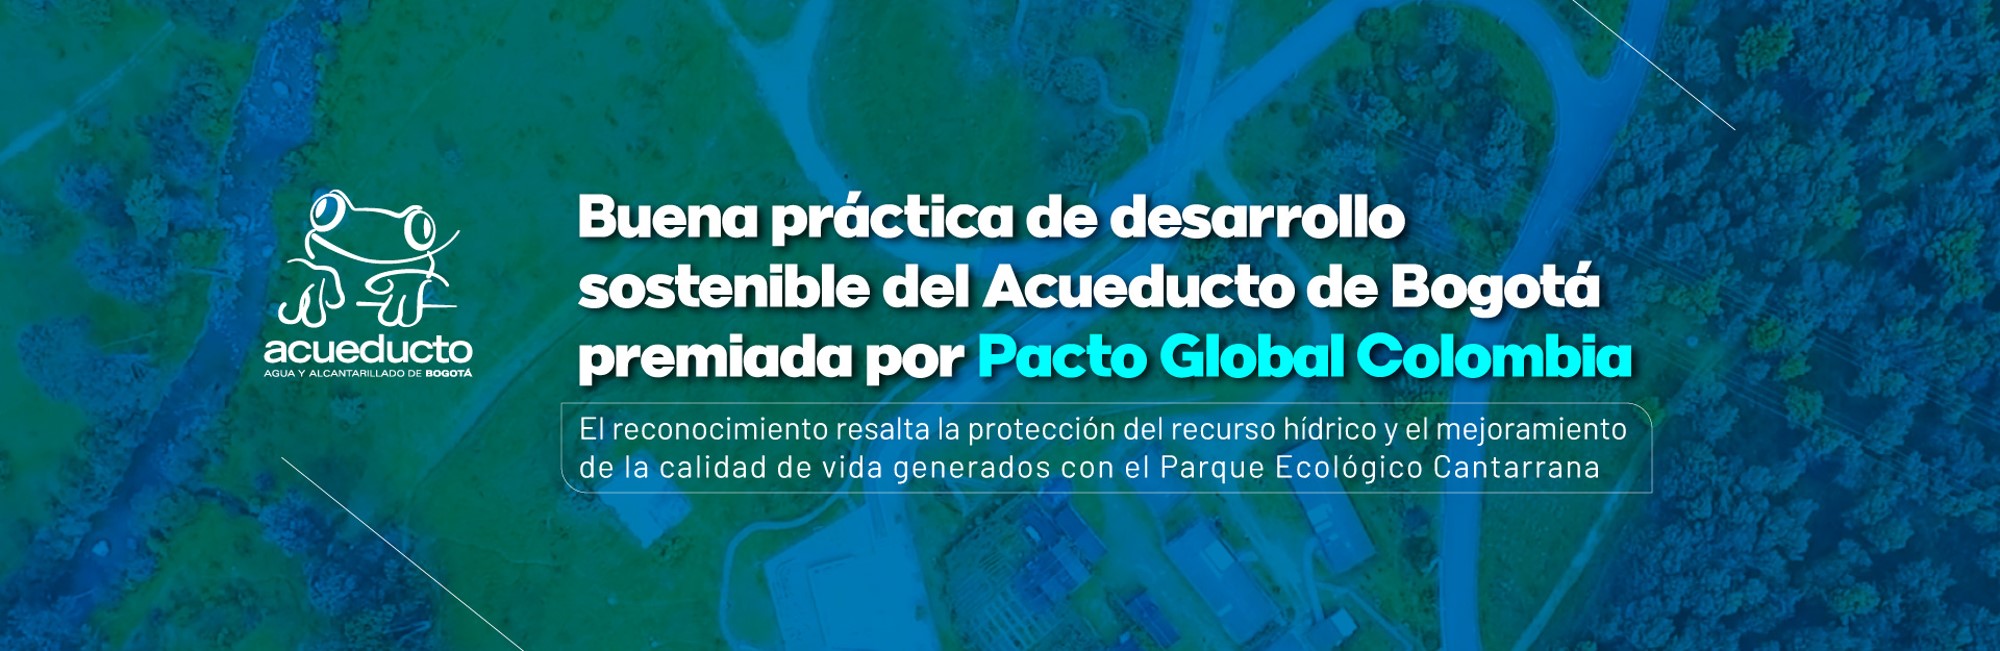 Buena práctica de desarrollo sostenible del Acueducto de Bogotá premiada por Pacto Global Colombia